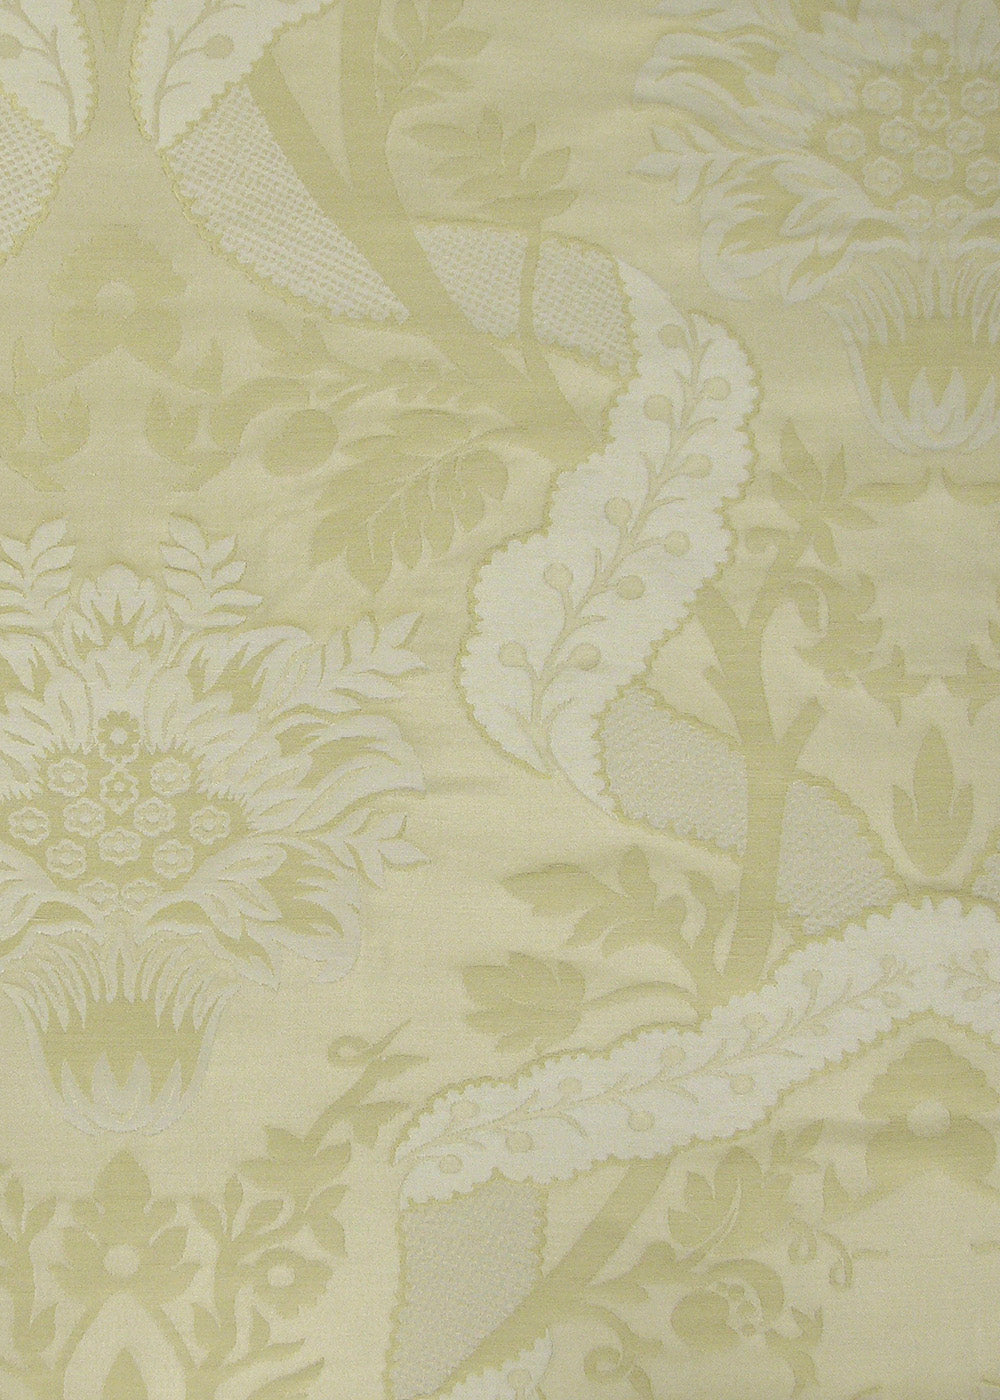 yellow woven damask fabric